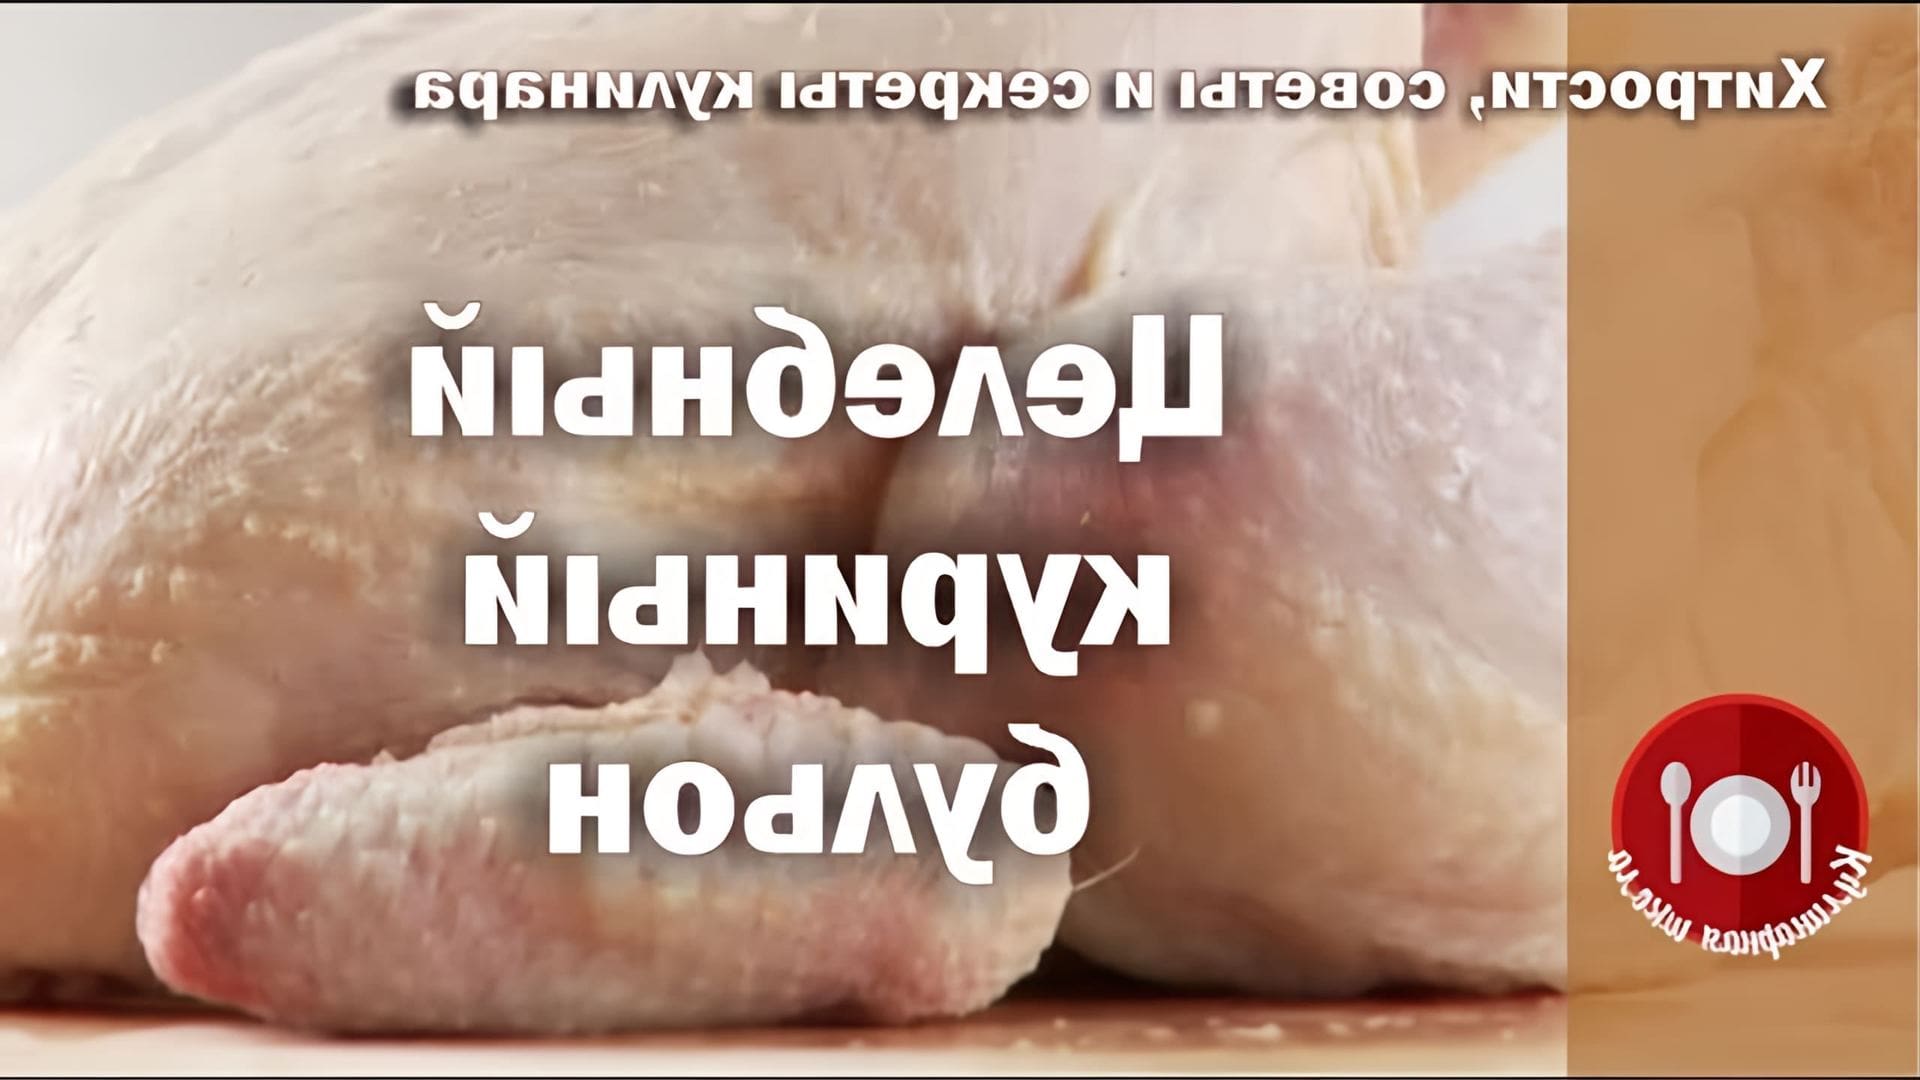 В этом видео рассказывается о пользе куриного бульона, который называют еврейским антибиотиком или пенициллином